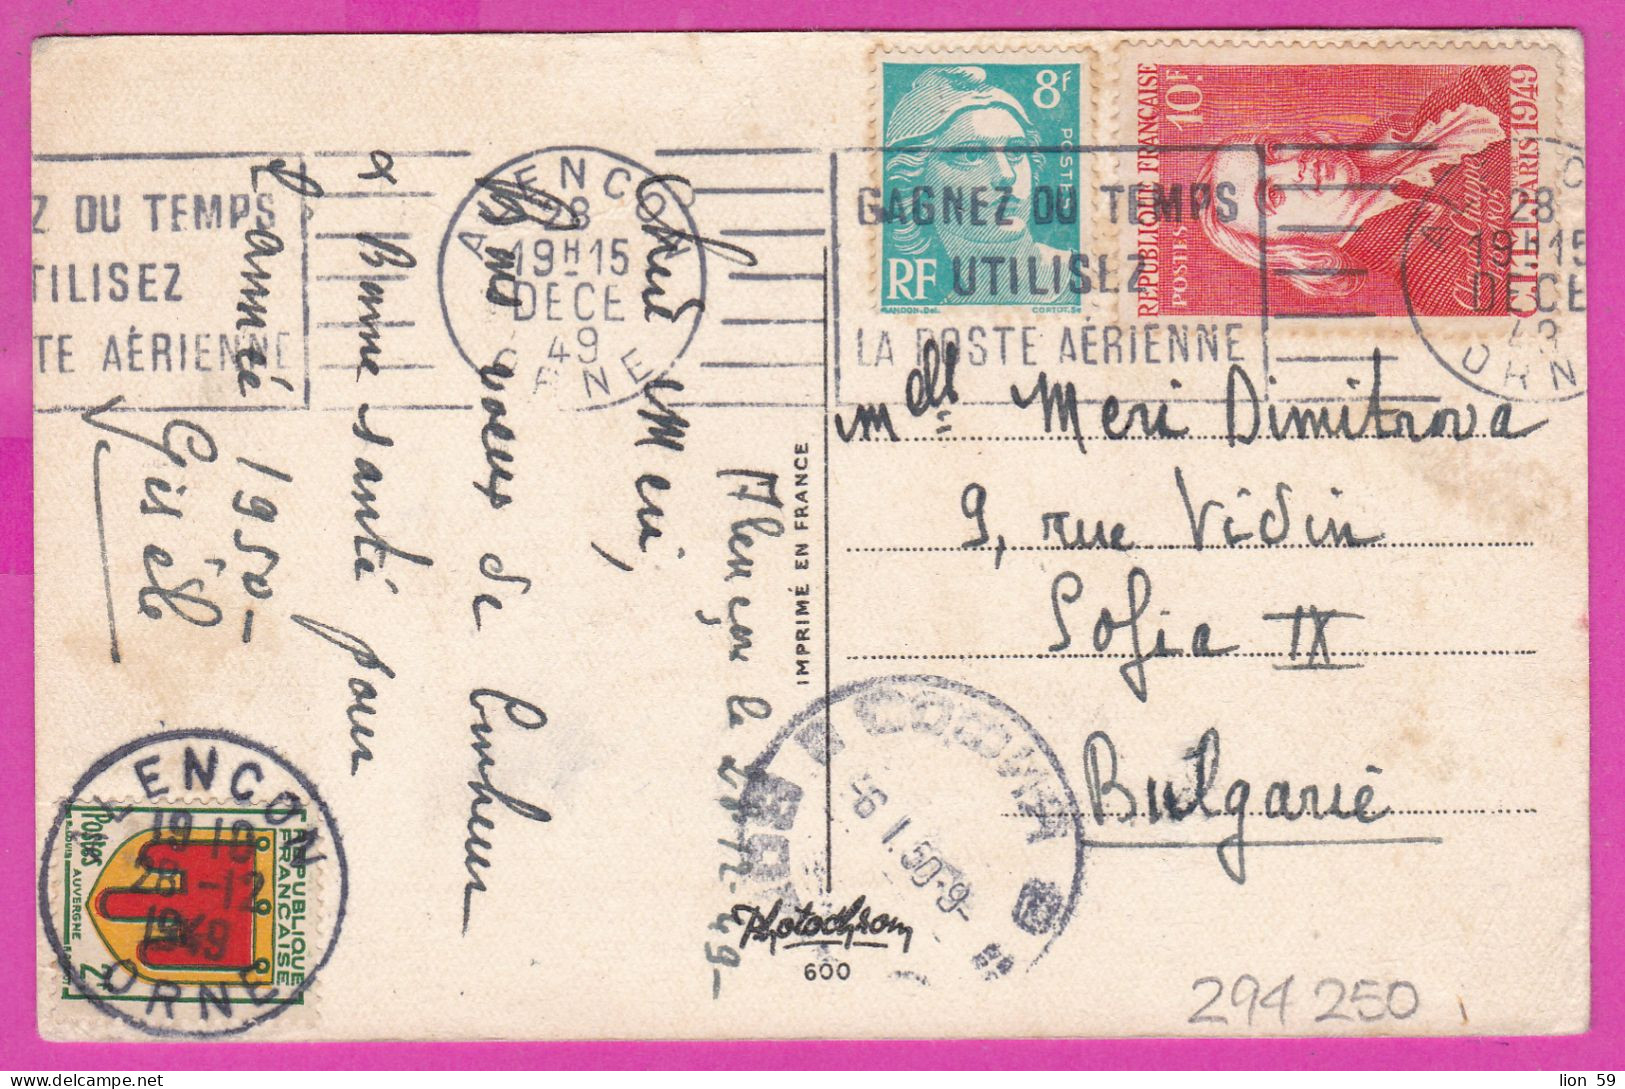 294250 / France illust Bonne Annee  PC 1949 Alençon USED 9+10+2 Fr. Marianne de Gandon Blason d'Auvergne Claude Chappe